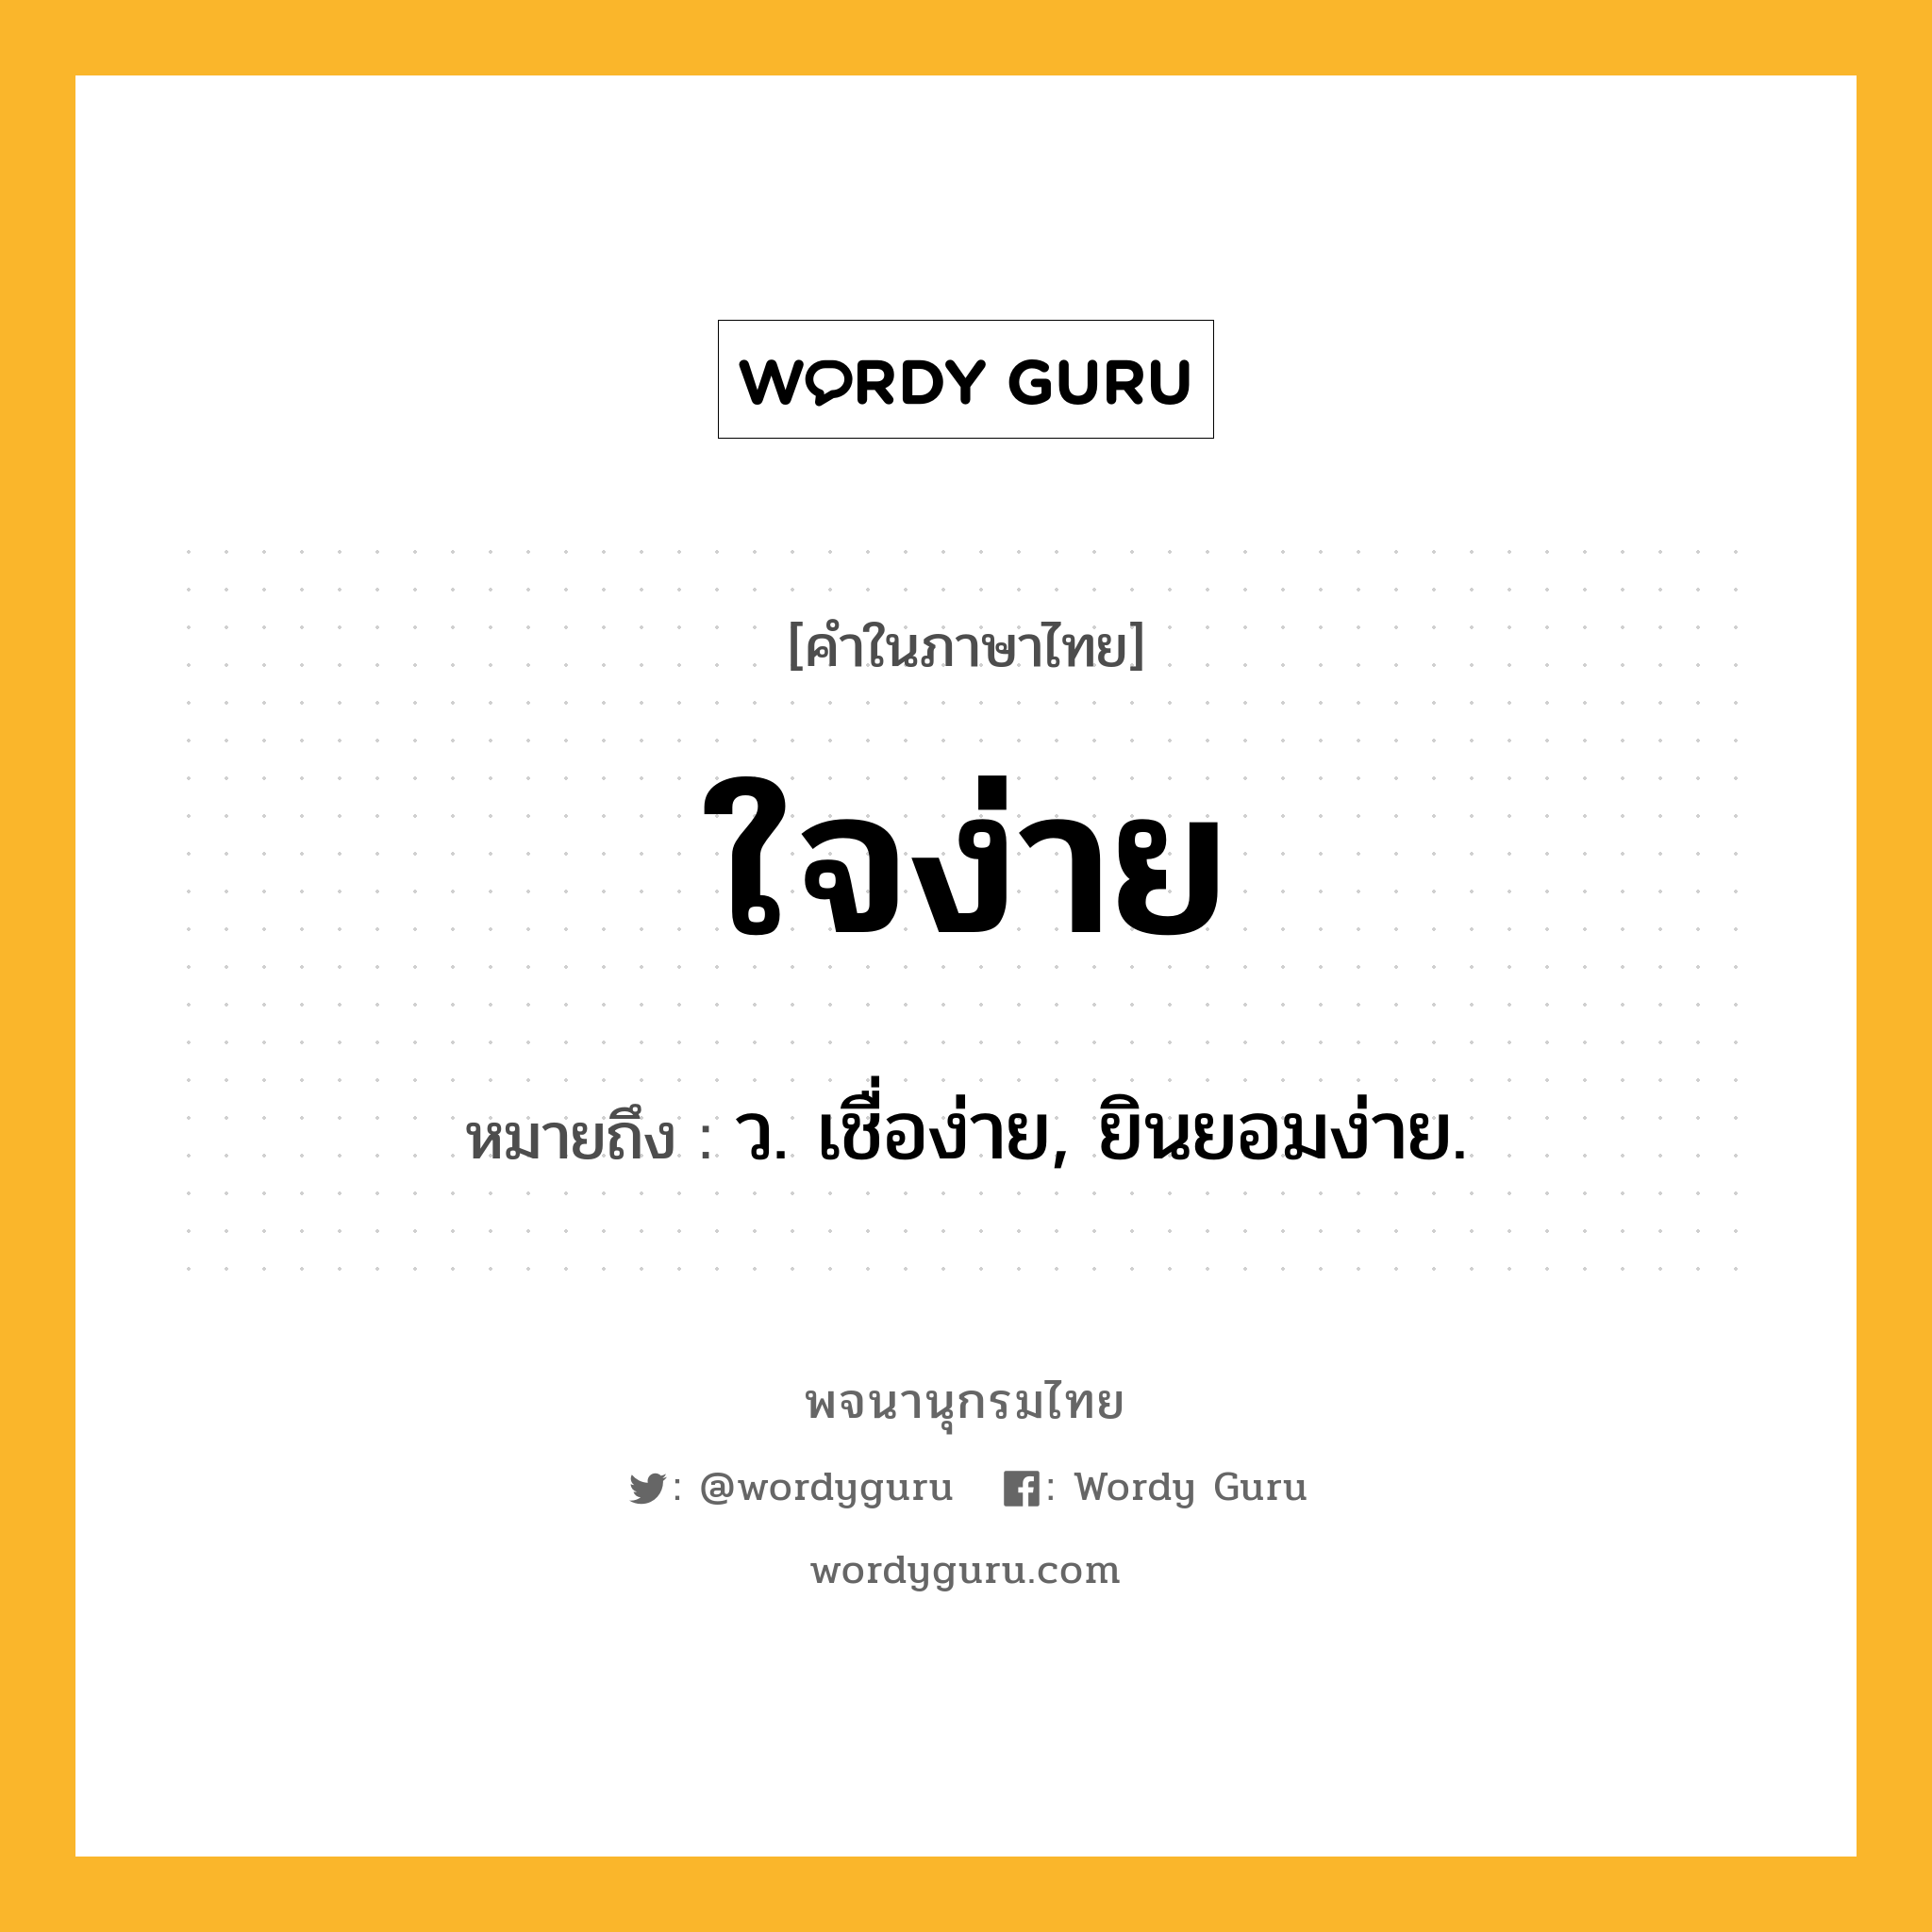 ใจง่าย หมายถึงอะไร?, คำในภาษาไทย ใจง่าย หมายถึง ว. เชื่อง่าย, ยินยอมง่าย.